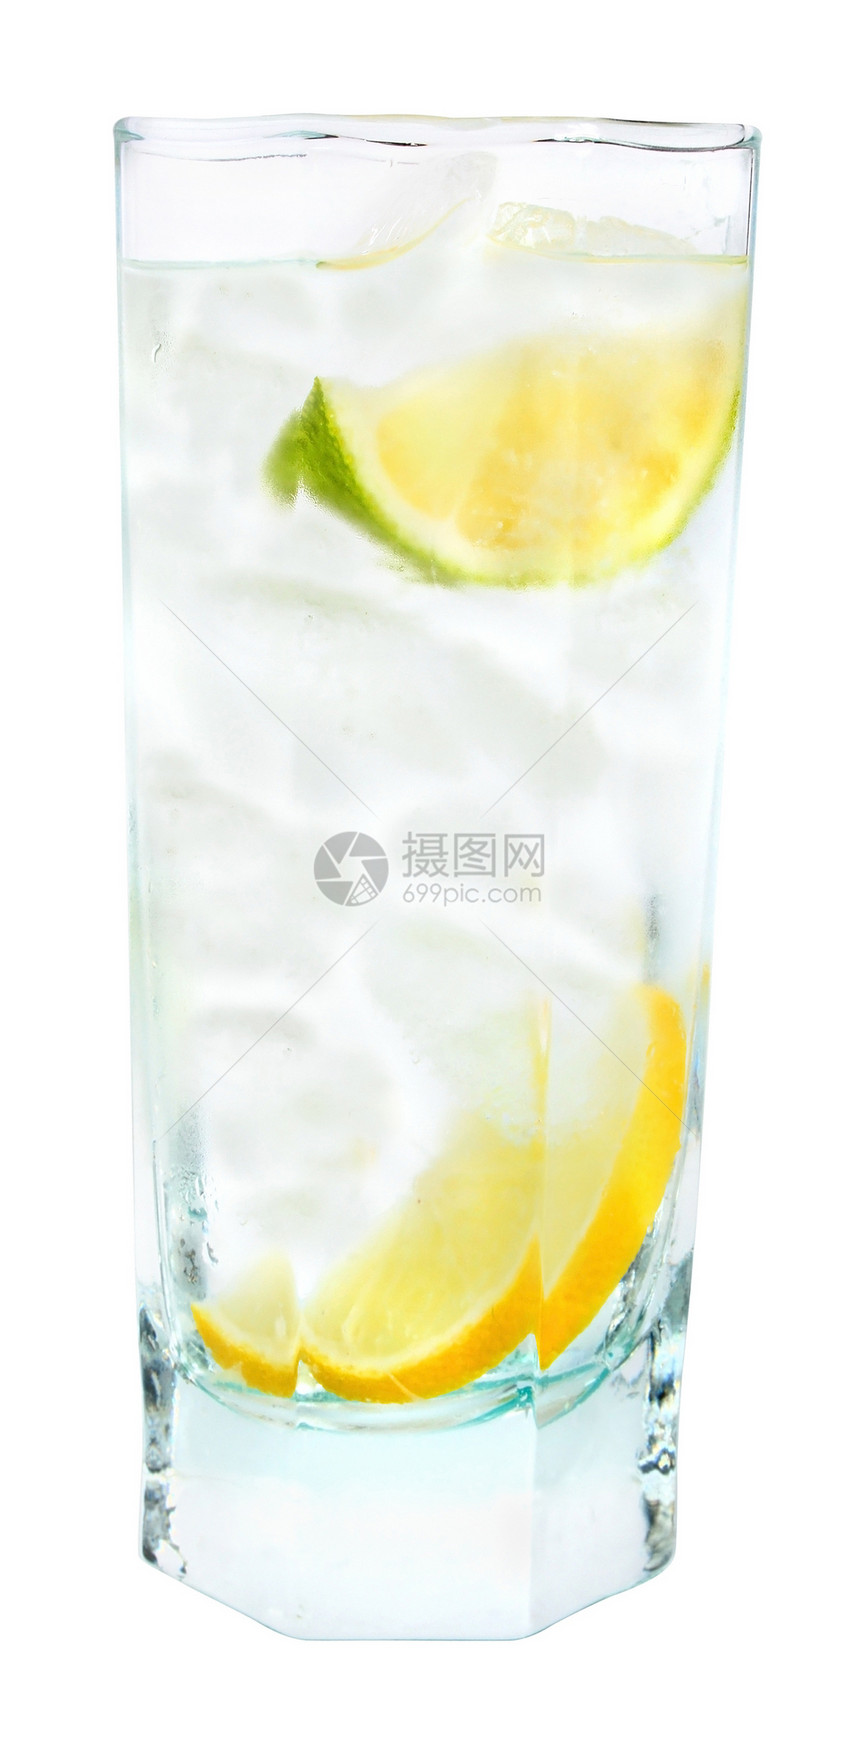 鸡尾酒玻璃水果柠檬绿色补品立方体图片